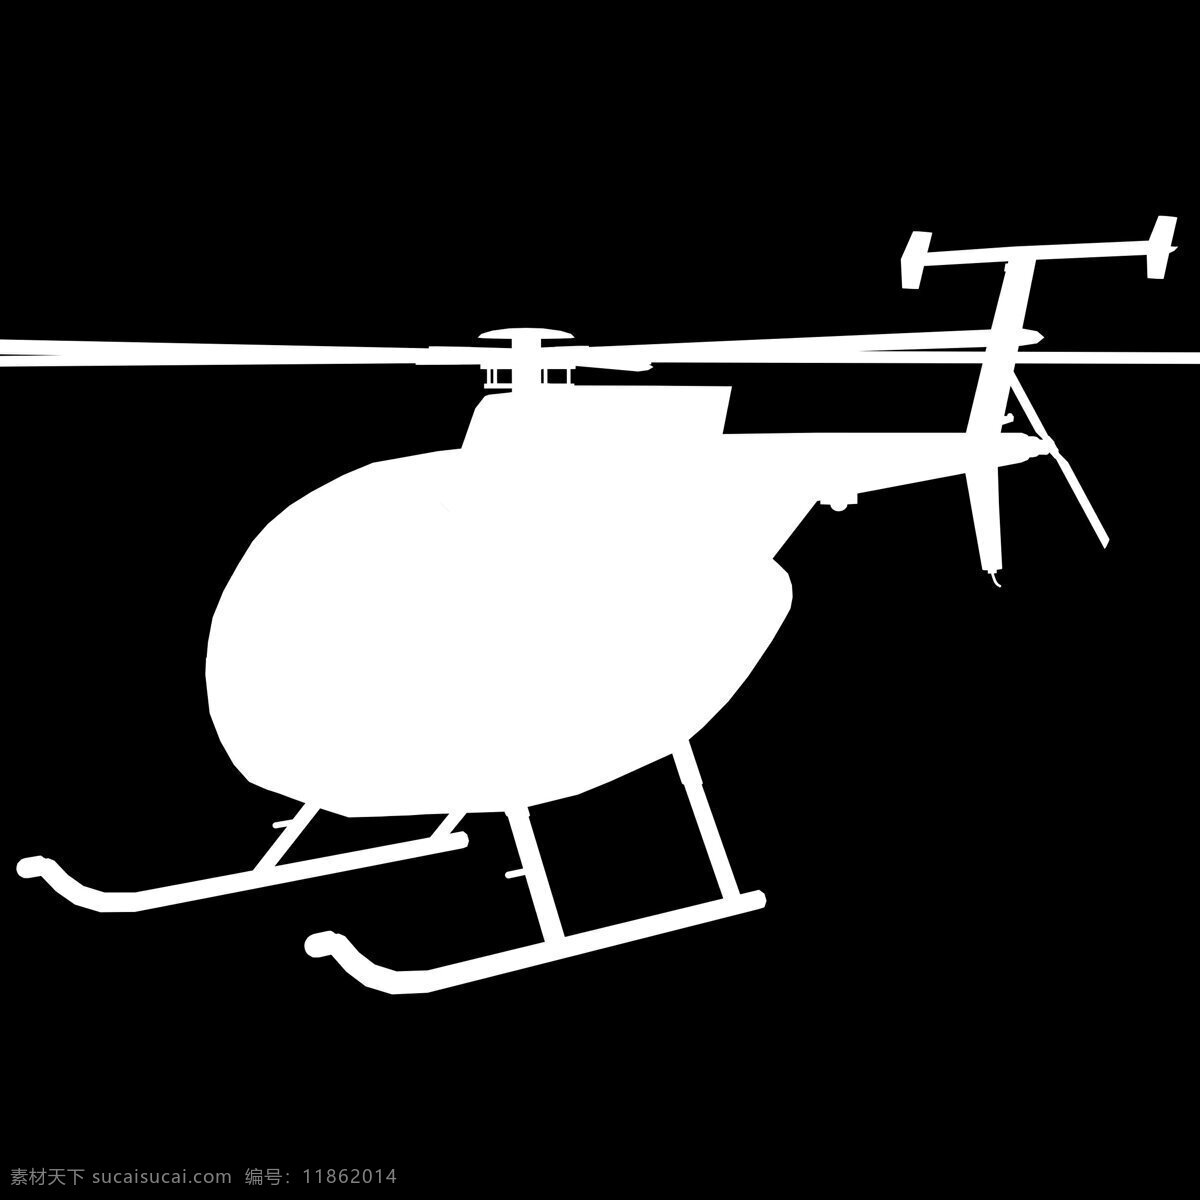 直升飞机 3dmax 飞机模型 3d 模型 兵器 3d模型素材 其他3d模型